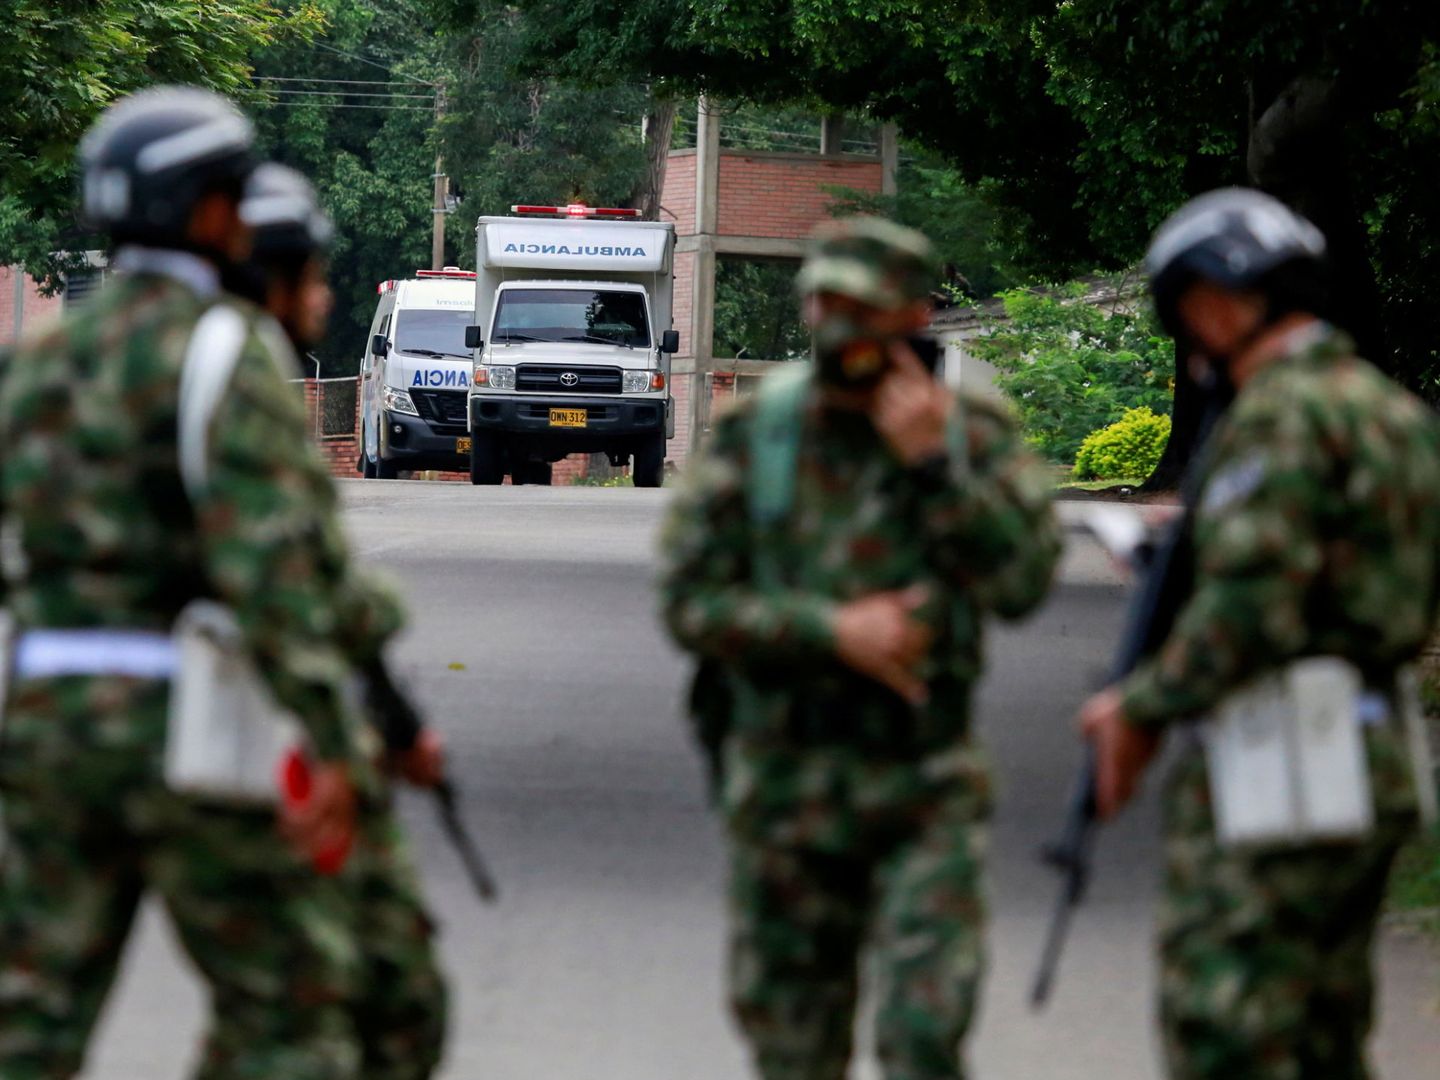 Soldados patrullando cerca de la zona. (Reuters)